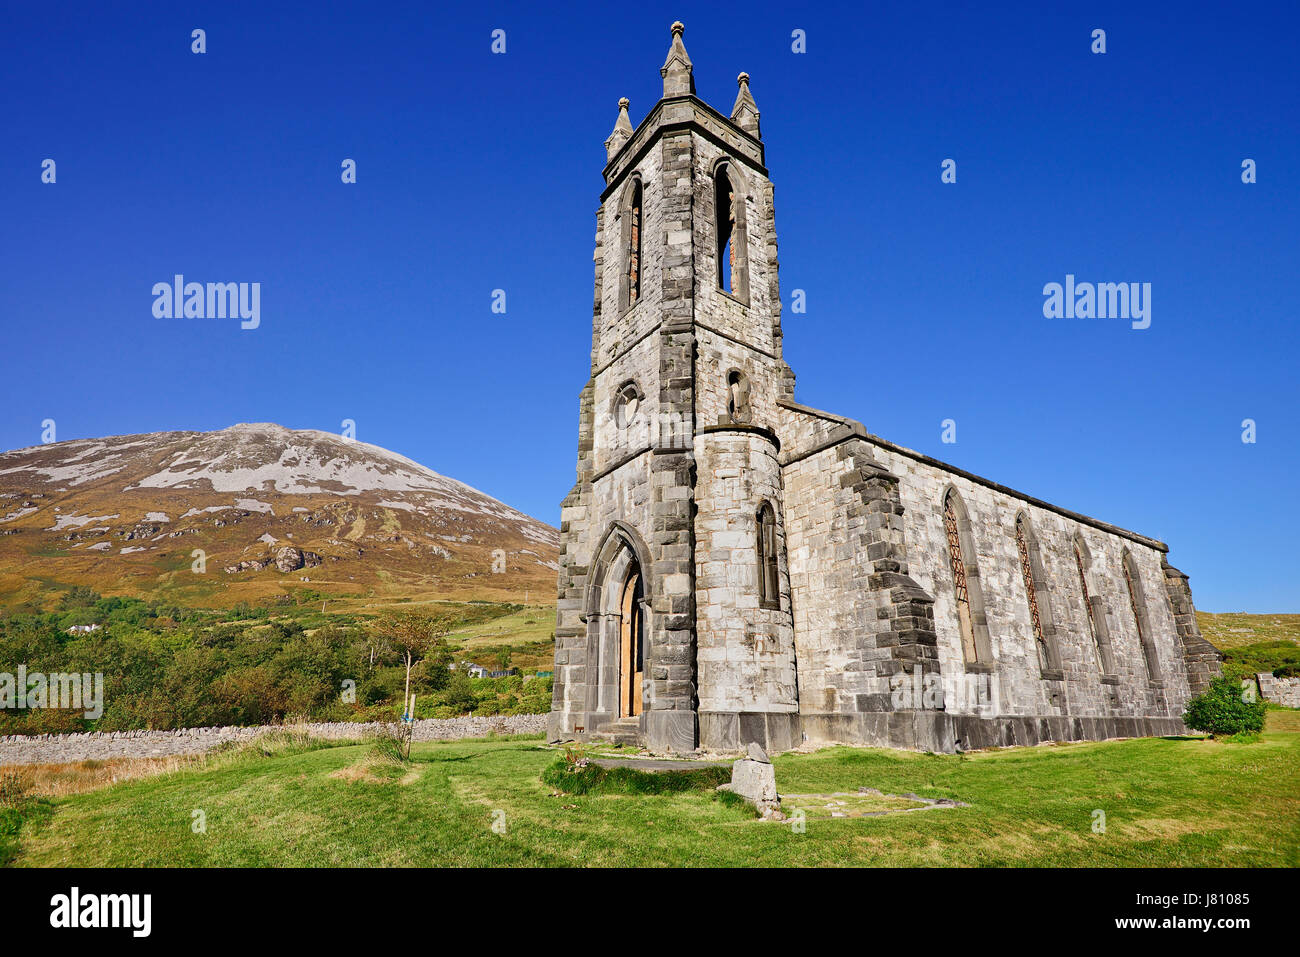 Irland, County Donegal, Ruine der Dunlewey Church of Ireland in The Glen vergiftet, als ein Denkmal für ihre Hu von Jane Smith Russell errichtete Gebäude Stockfoto